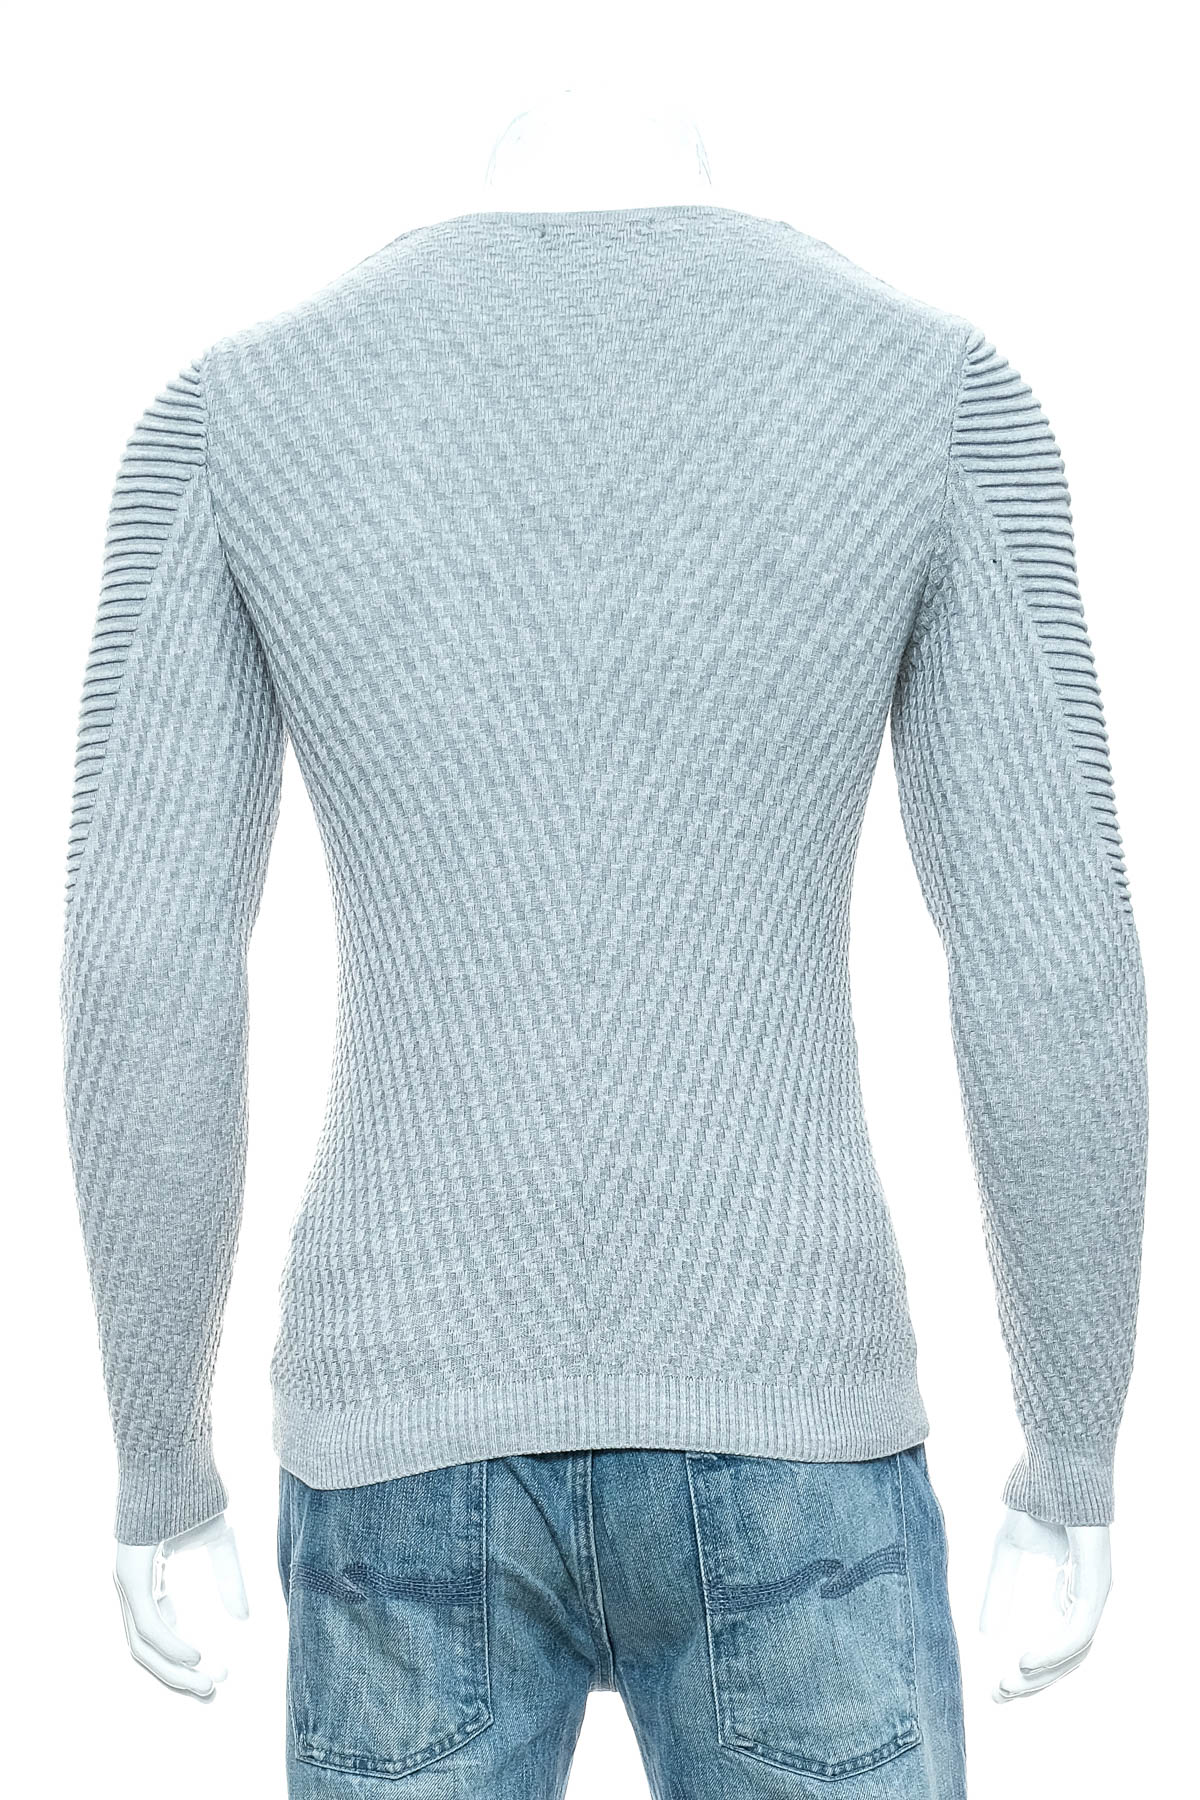 Men's sweater - Lagos - 1